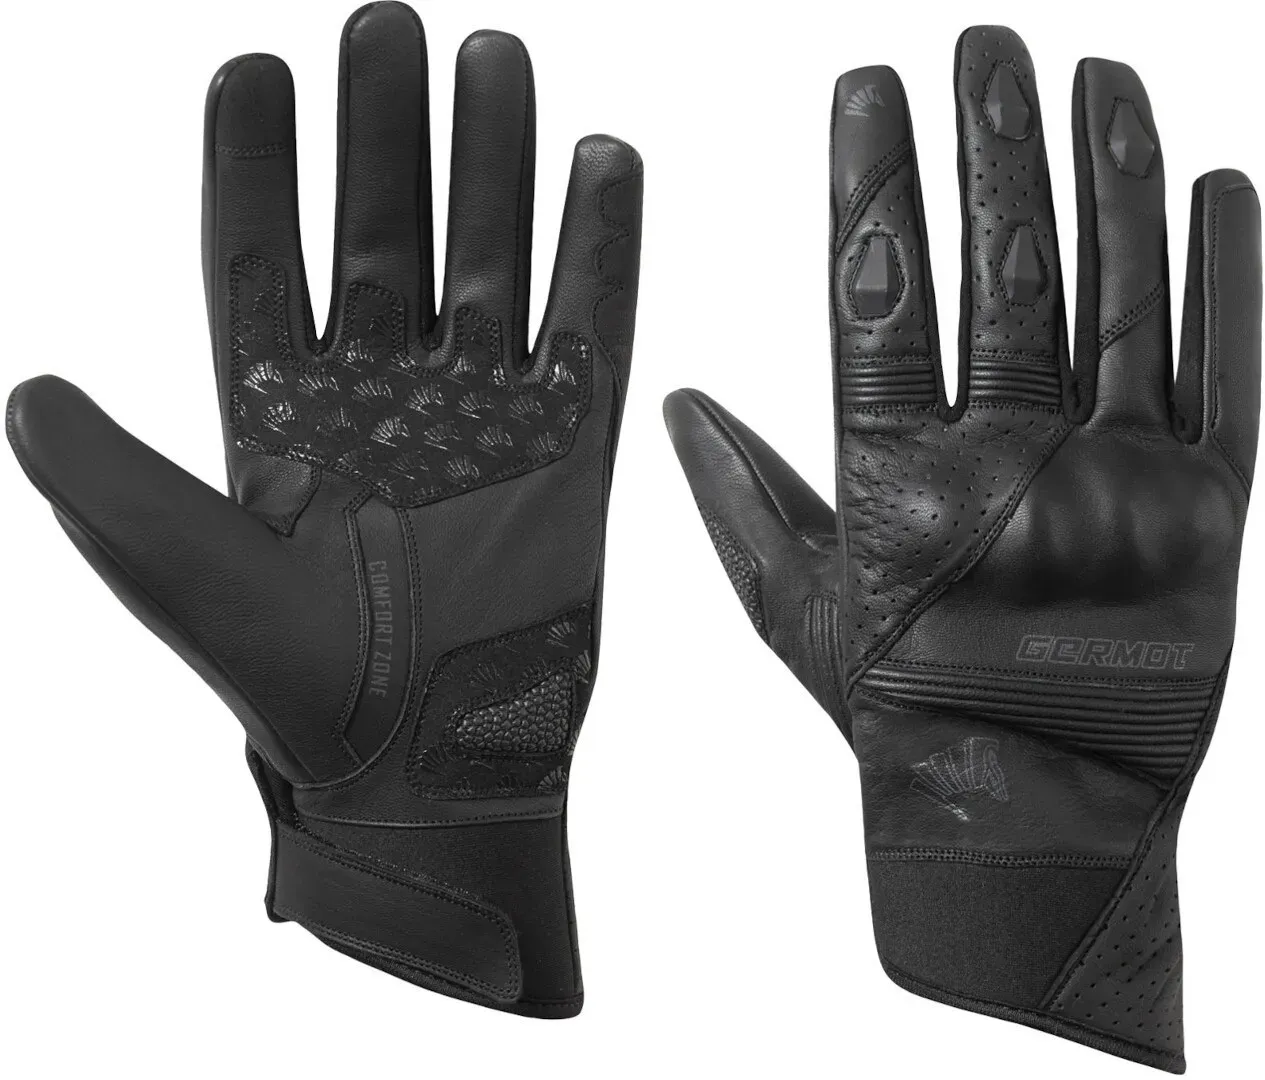 Germot Thompson Motorfiets handschoenen, zwart, XL